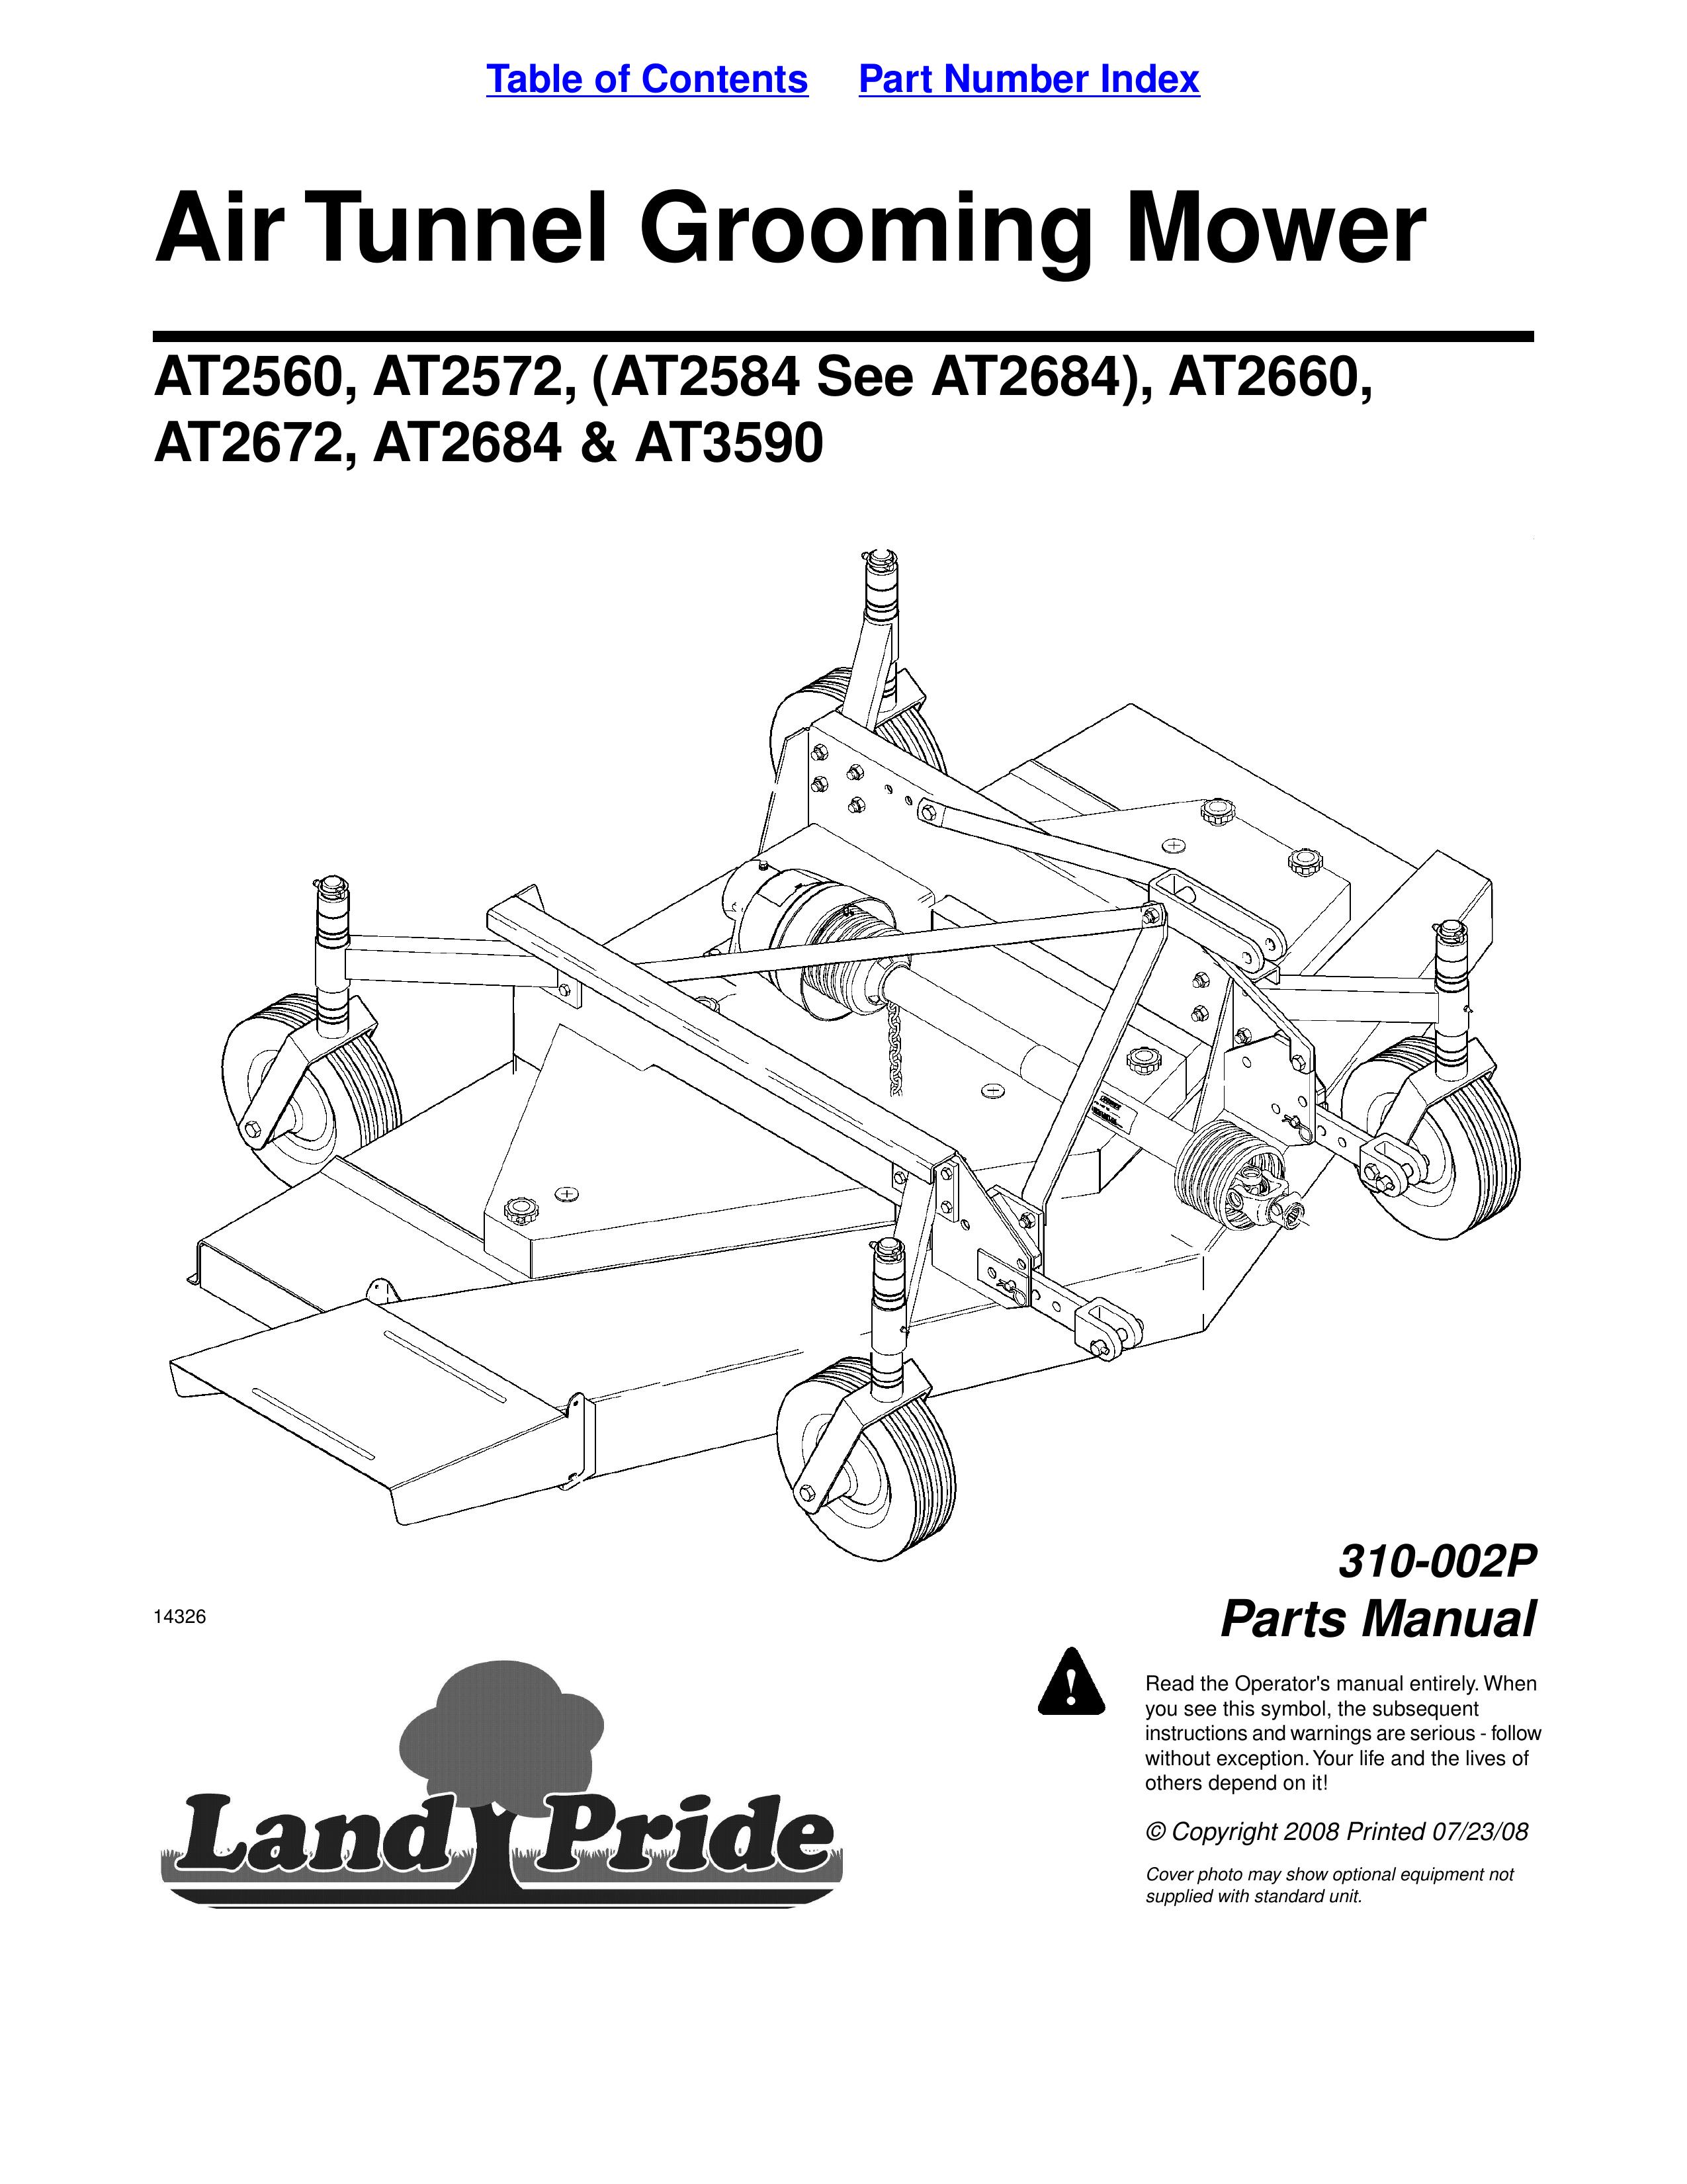 Land Pride AT2572 Lawn Mower User Manual